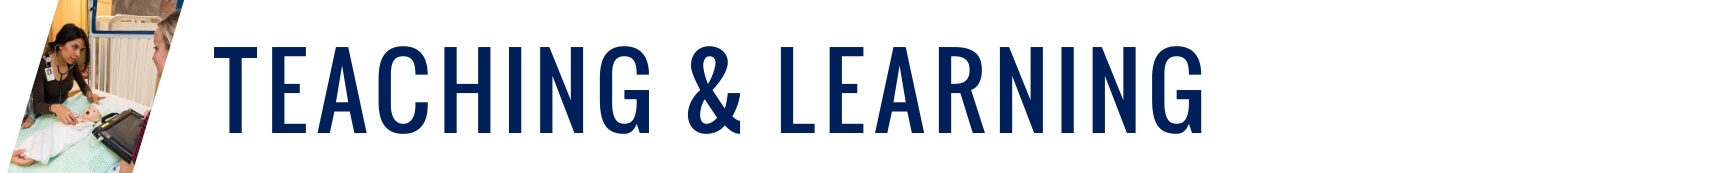 banner-teaching-learning